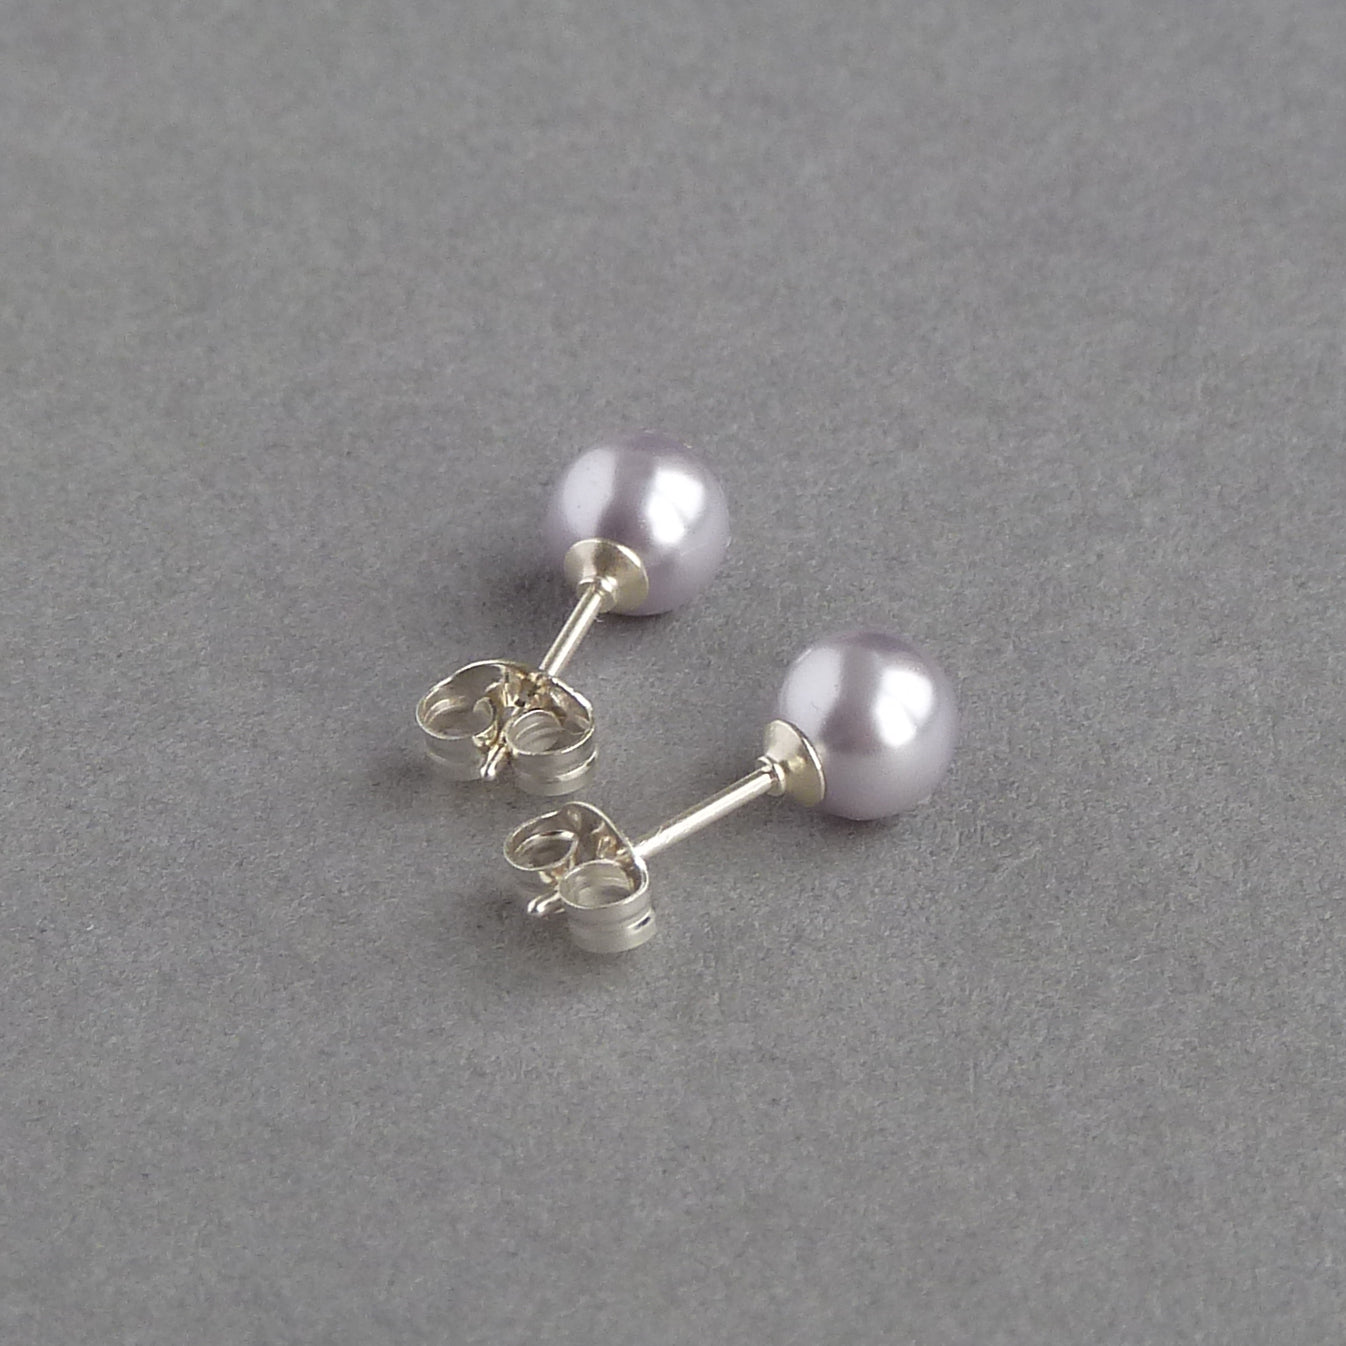 6mm lavender pearl stud earrings